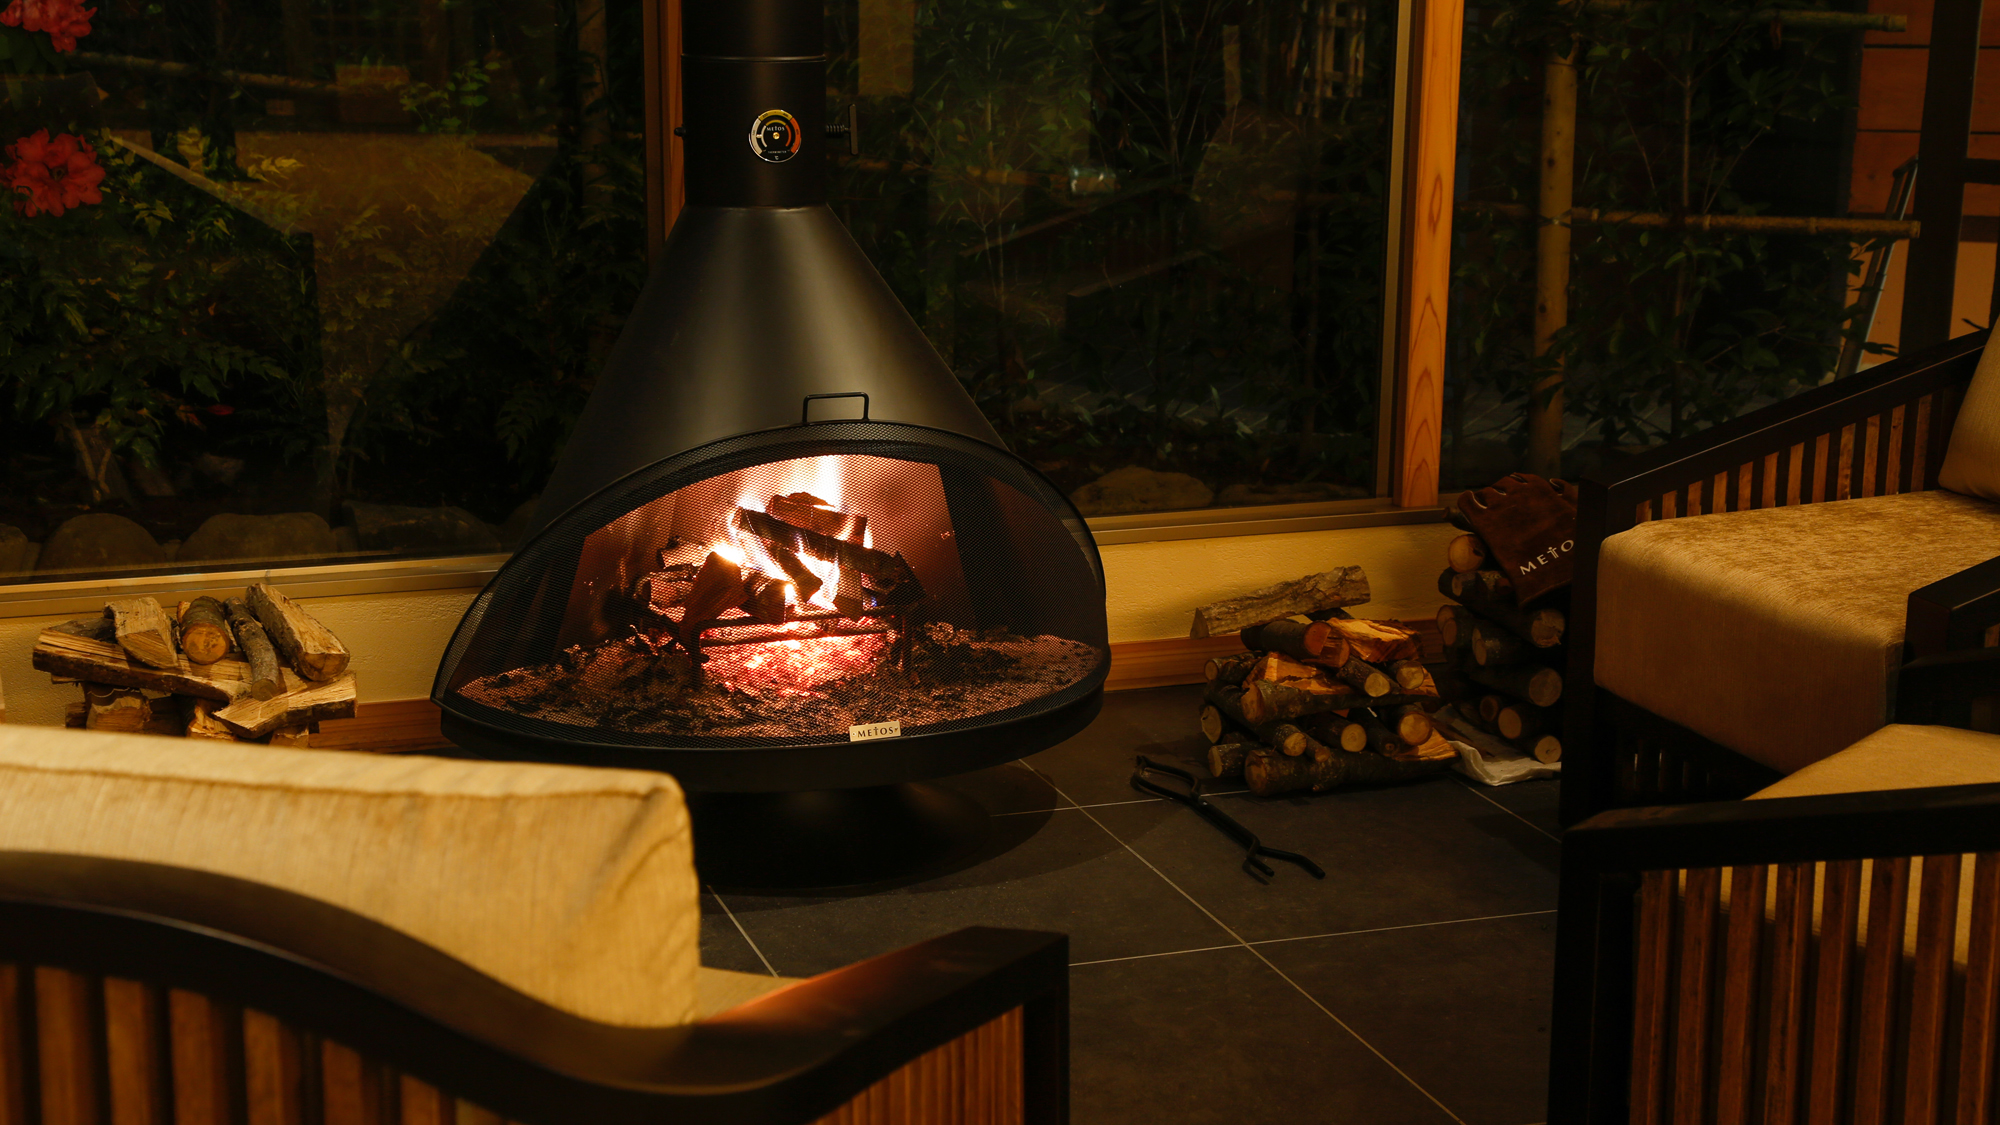 暖炉の温もりに包まれたロビーでは、木の香りとともに、薪のはぜる小さな音が心地よく響きます。